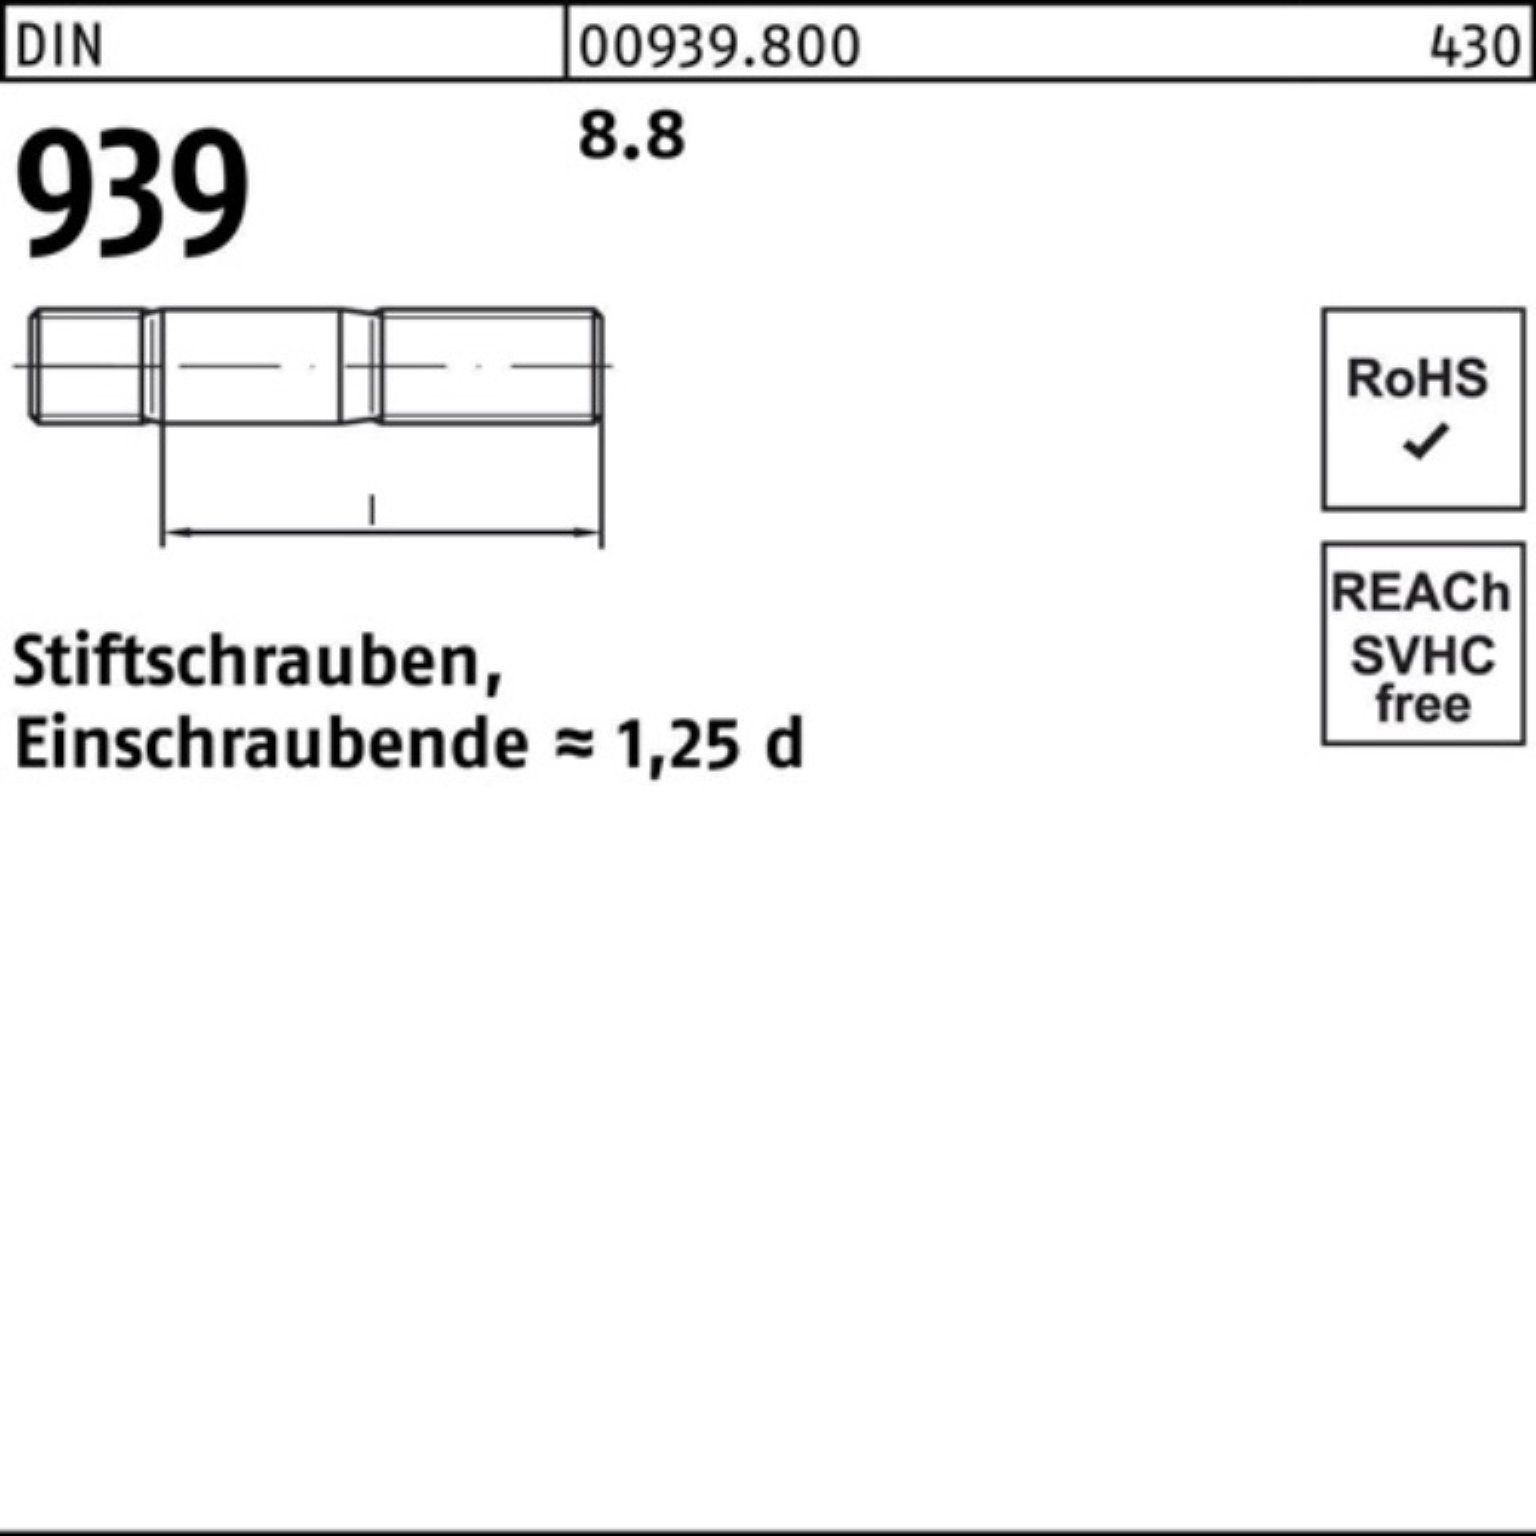 M24x Stiftschraube 8.8 Reyher 90 St DIN 100er Pack Stiftschraube Einschraubende=1,25d 939 1